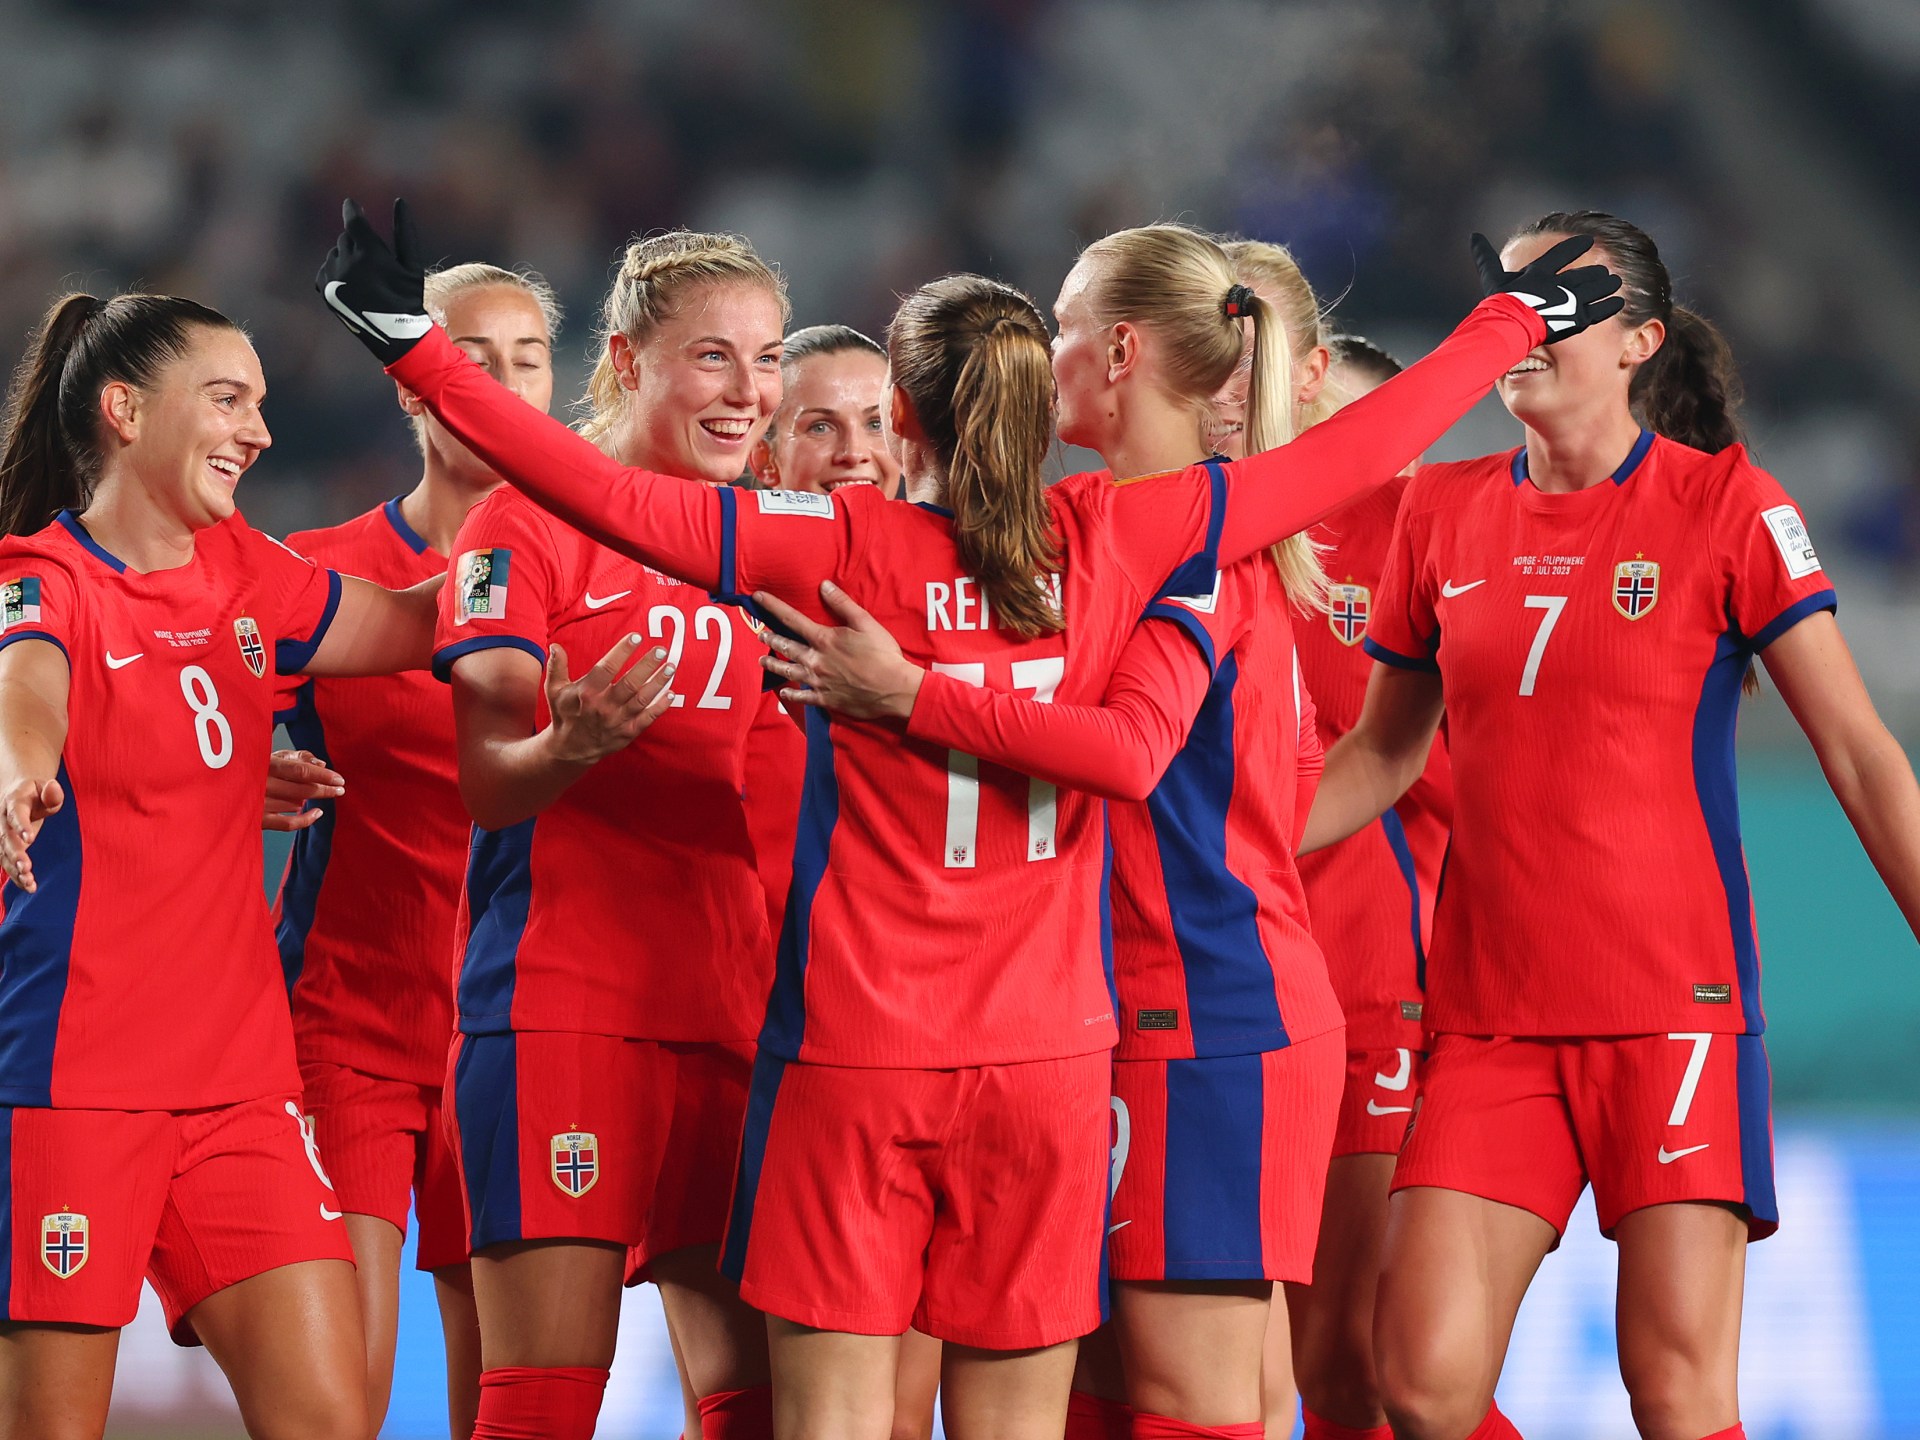 La Norvège se qualifie pour les huitièmes de finale de la Coupe du monde féminine après avoir battu les Philippines |  Actualités Coupe du Monde Féminine